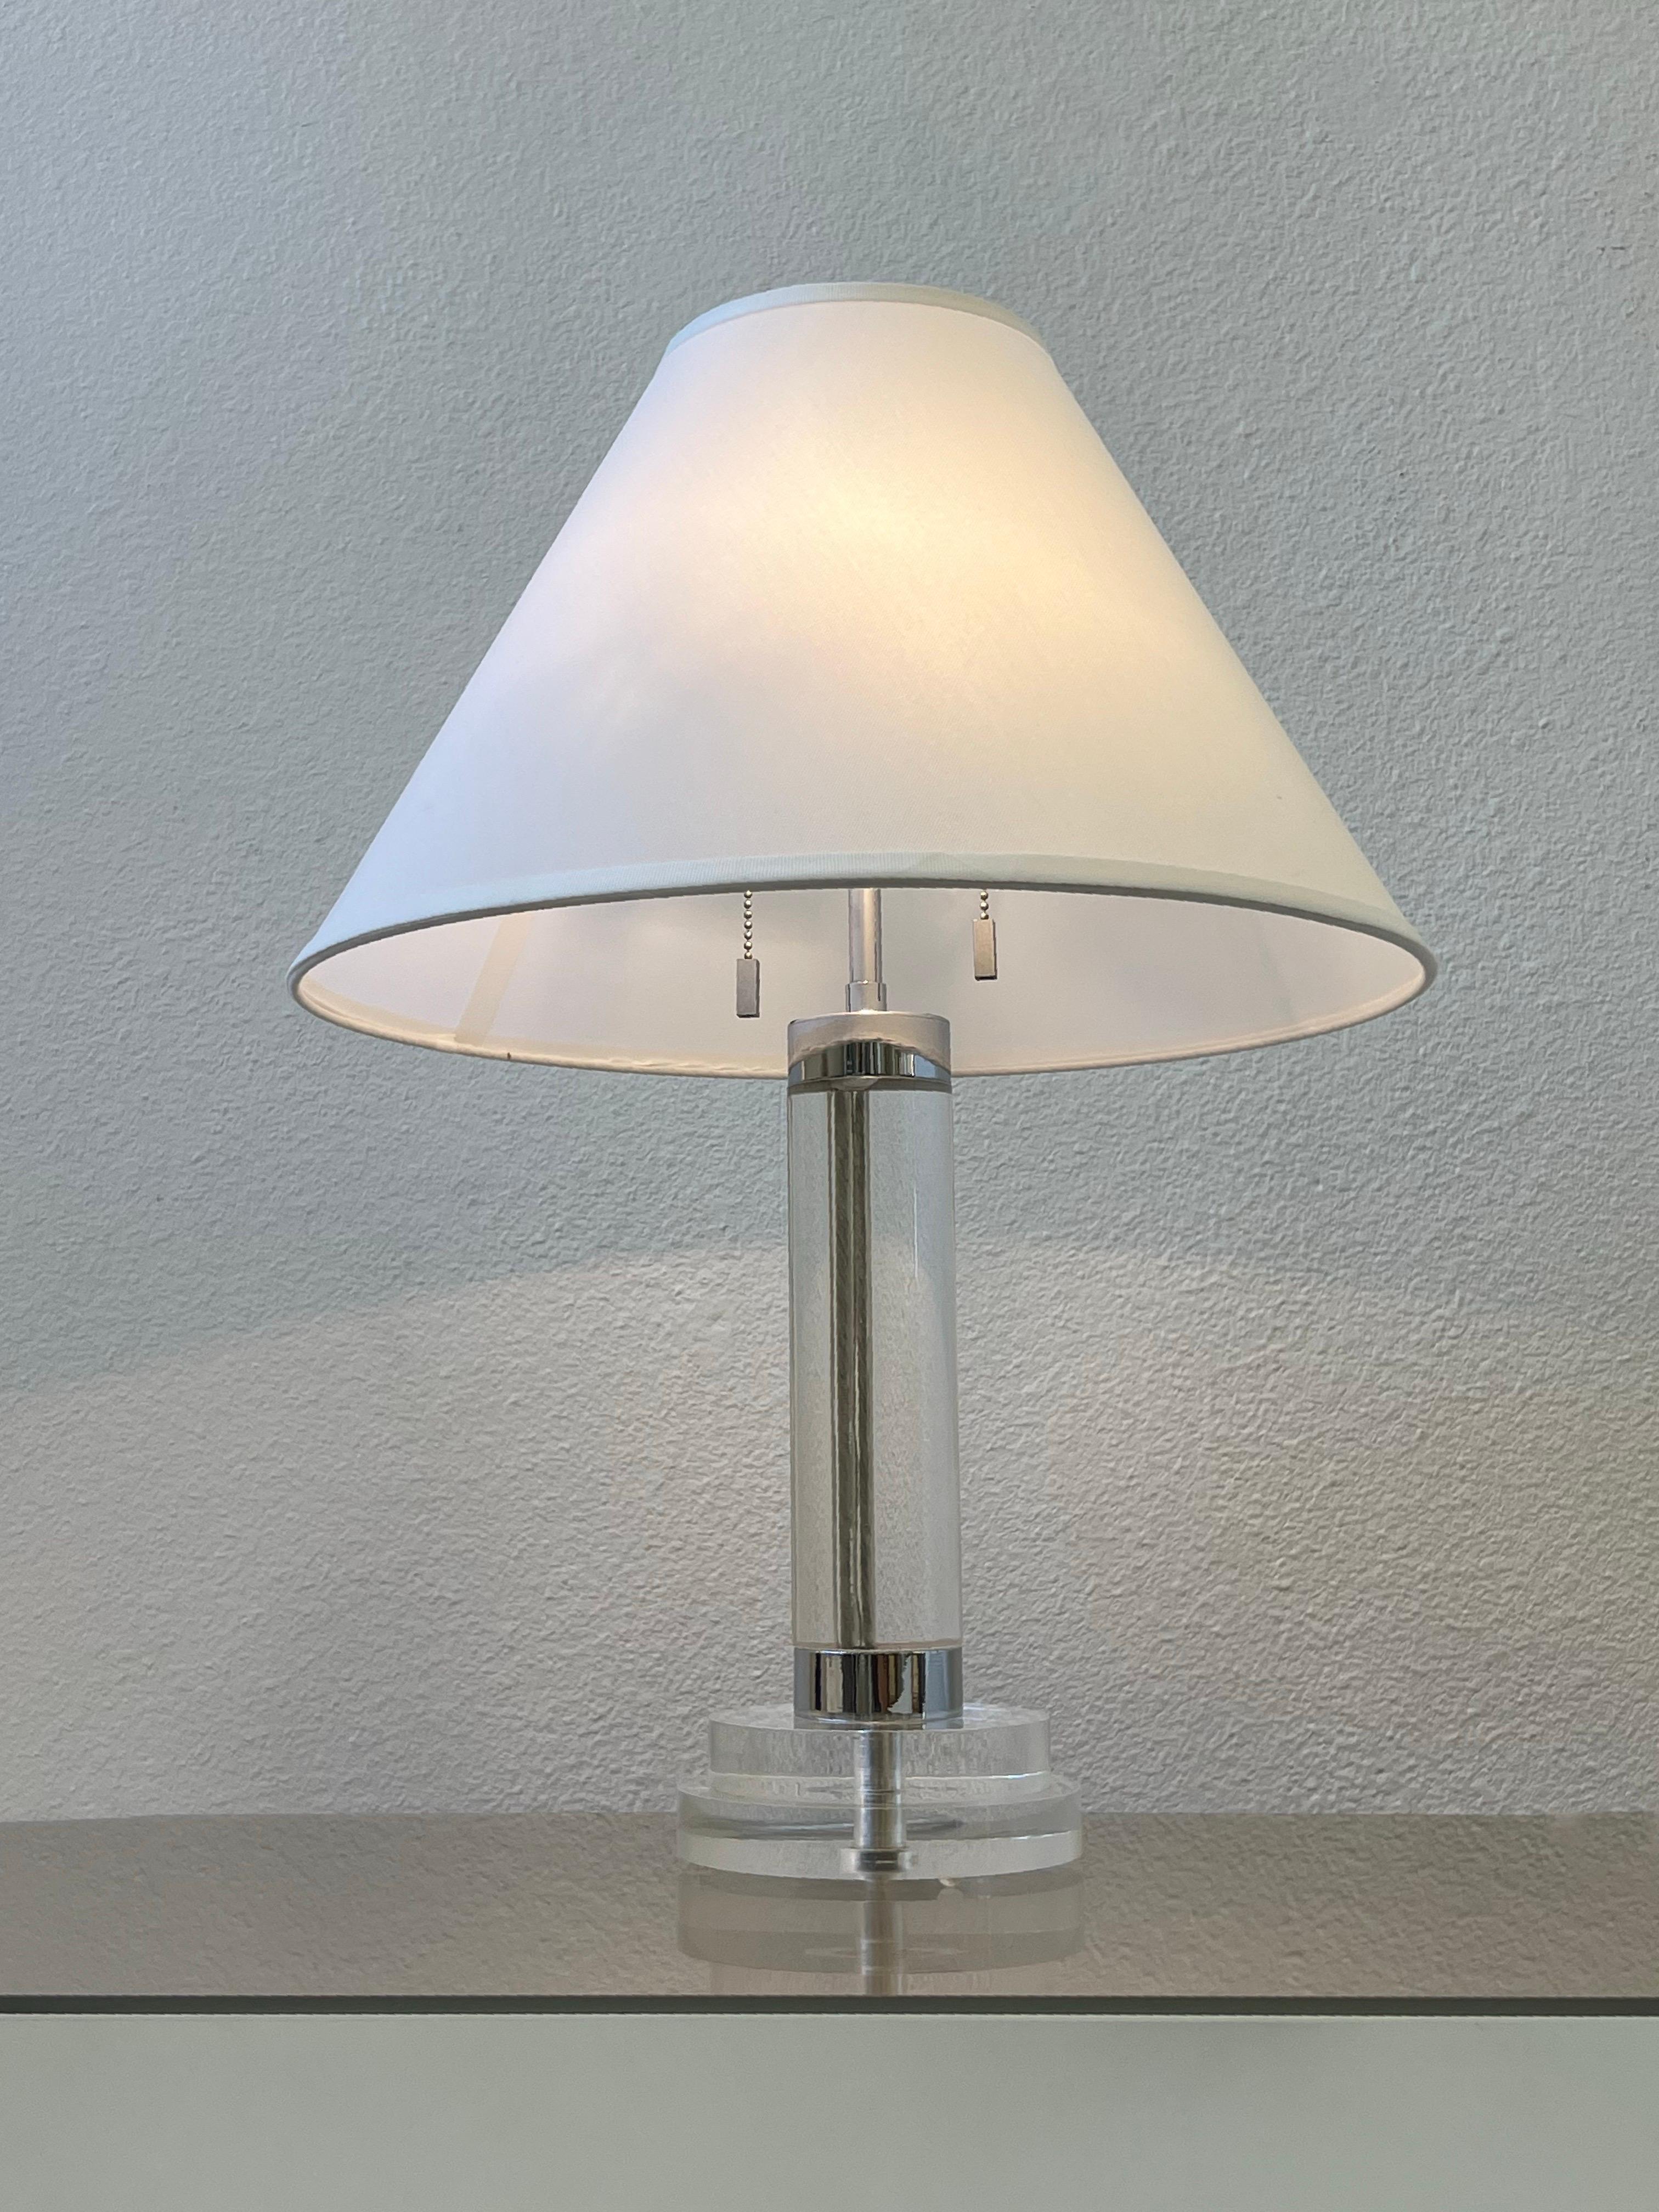 1980er Jahre Tischlampe aus klarem Acryl und poliertem Chrom von Karl Springer. 

Neu verkabelt und mit neuer Beschattung. 
Es werden zwei 75w Max Edison Glühbirnen verwendet.

Abmessungen: 17